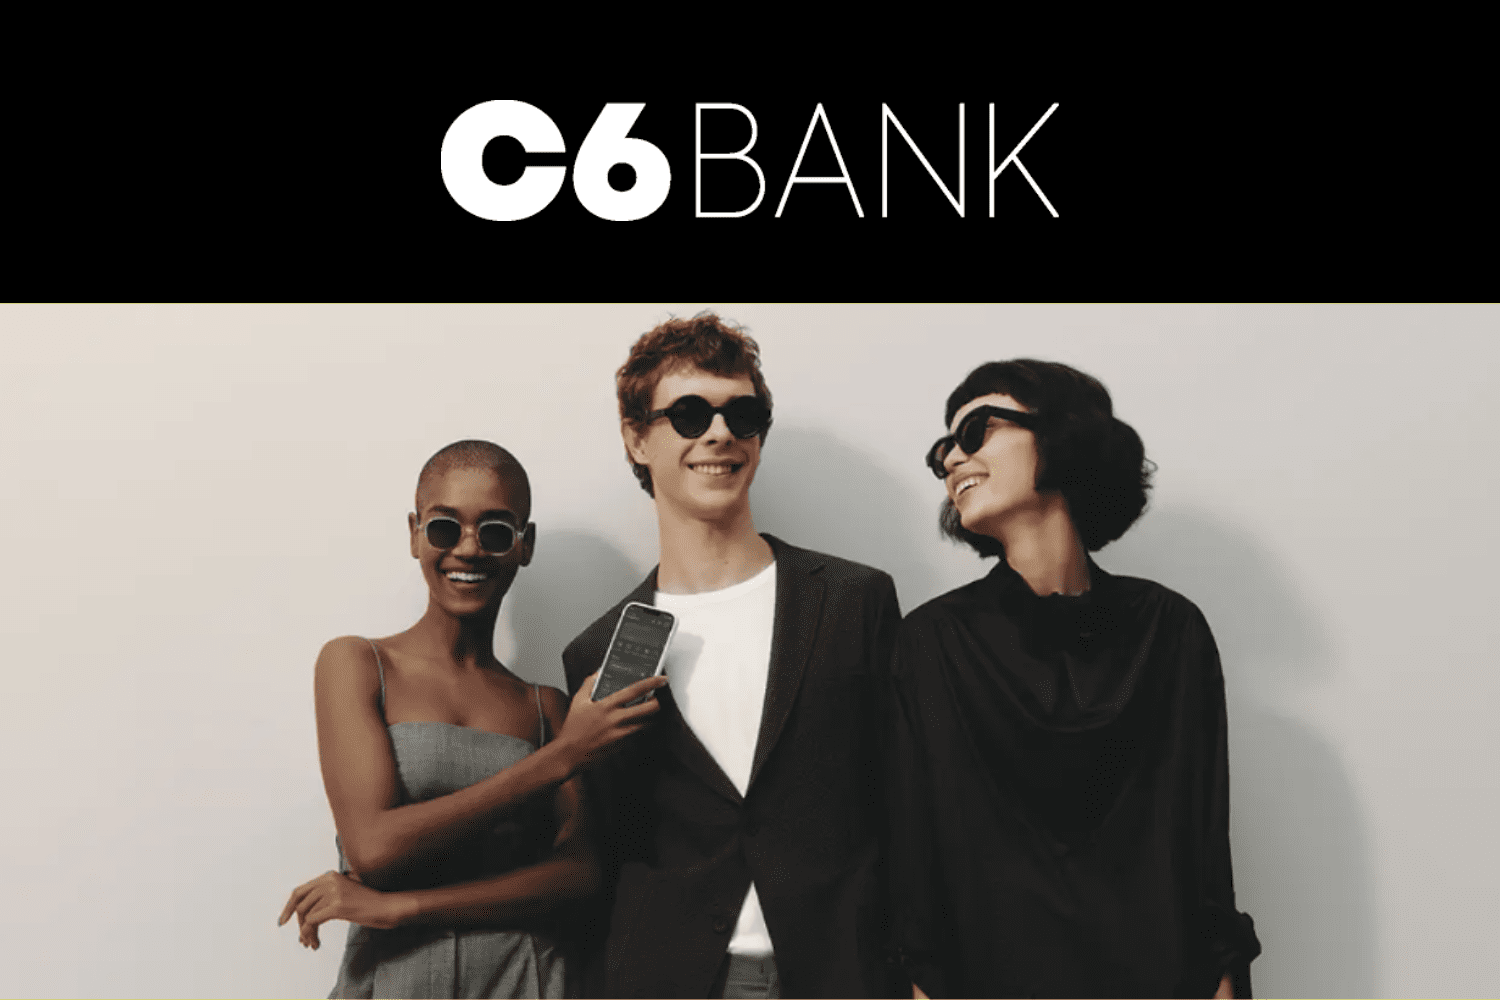 mulher preta com óculos escuro segurando um celular, homem branco sorrindo e mulher amarela sorrindo com logo C6 Bank